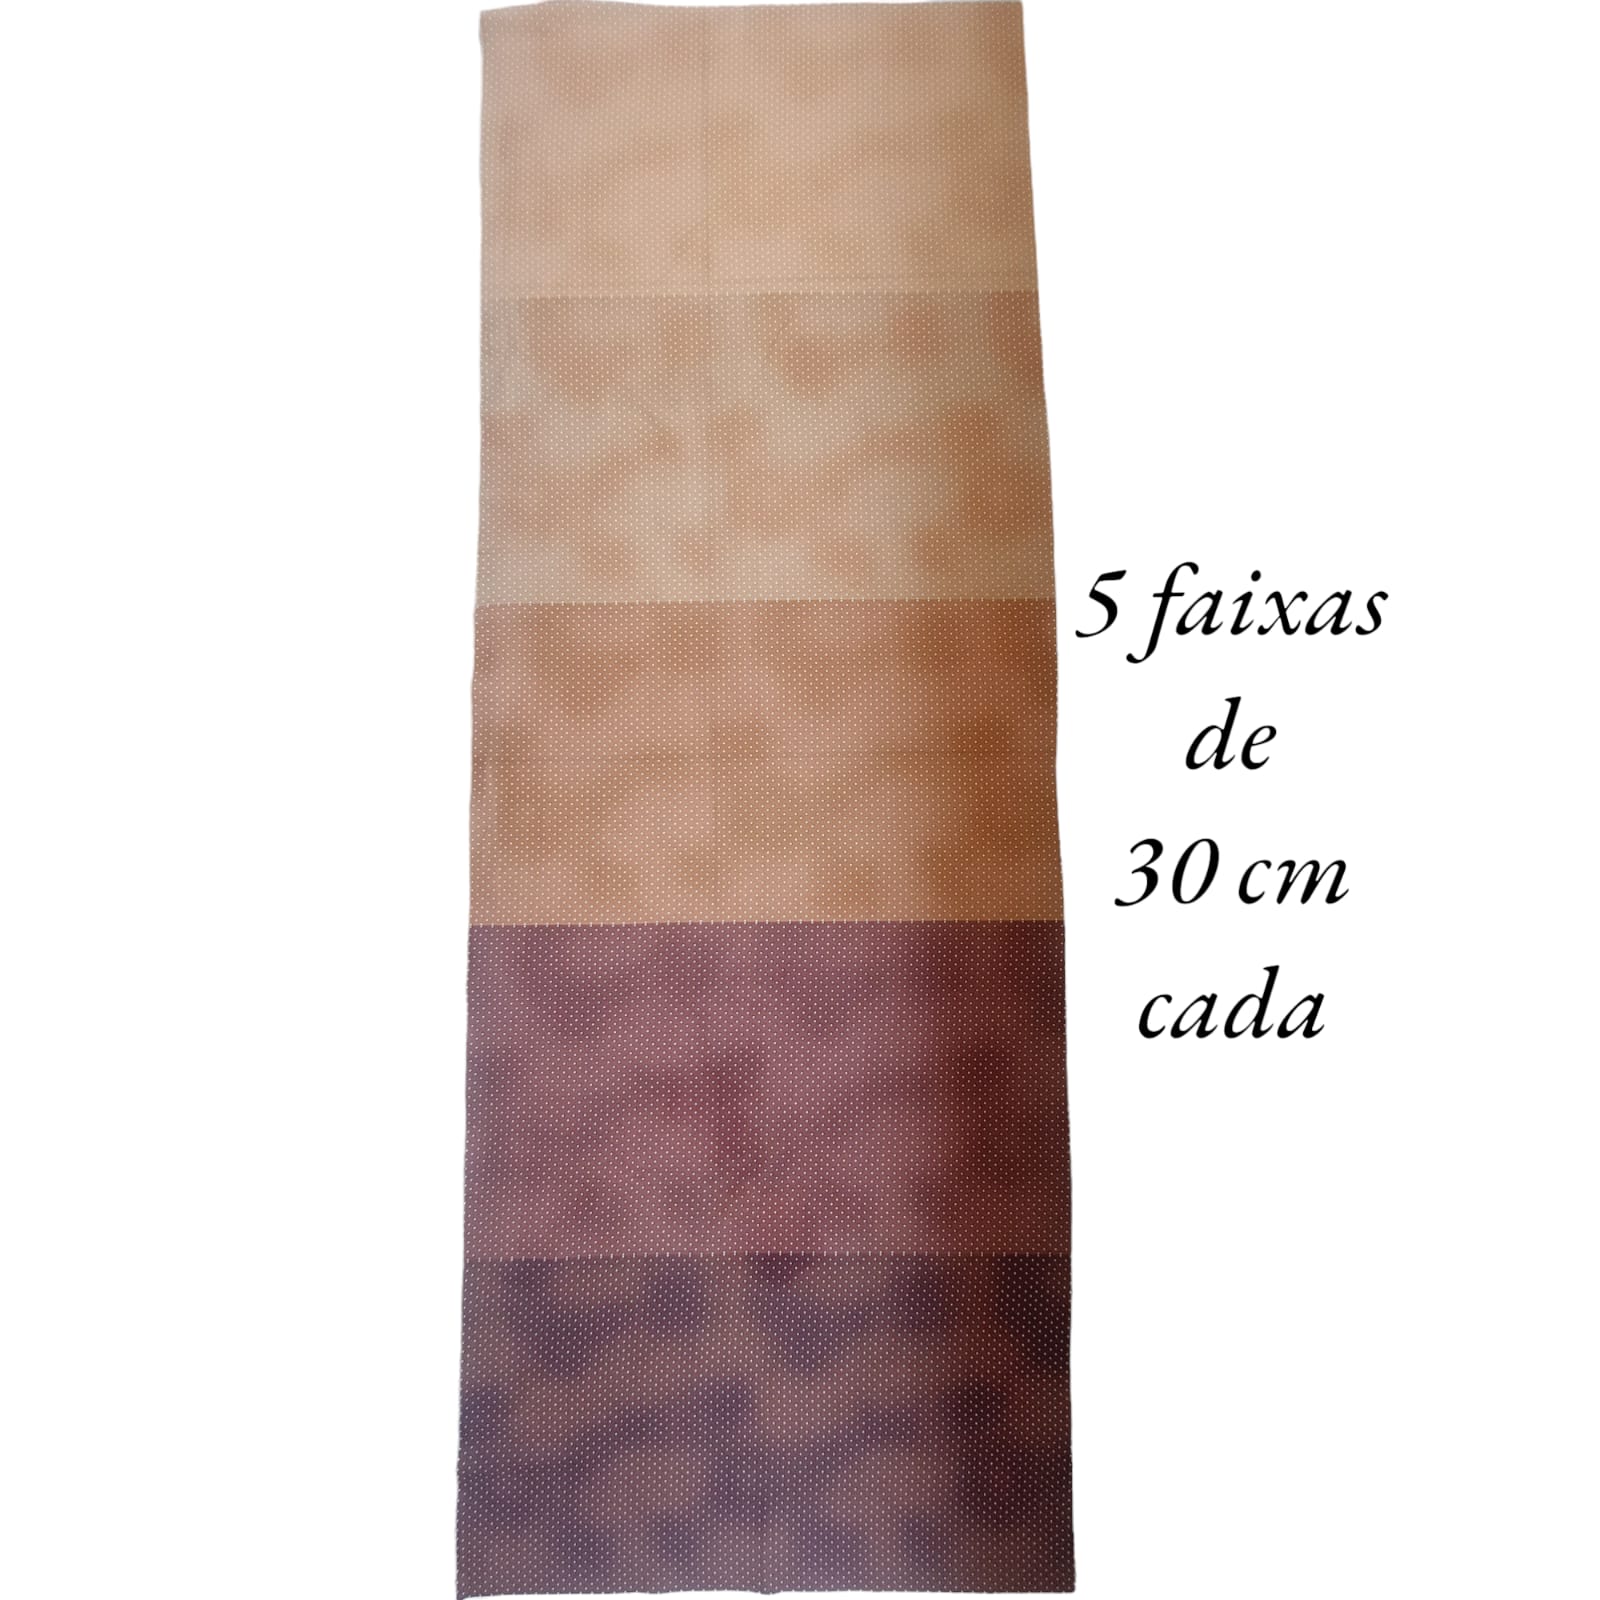 Tecido Tricoline digital - faixas de poa branco fd. marrom - Col. Basics for All - Fernando Maluhy  (50x1,50 cm)                          